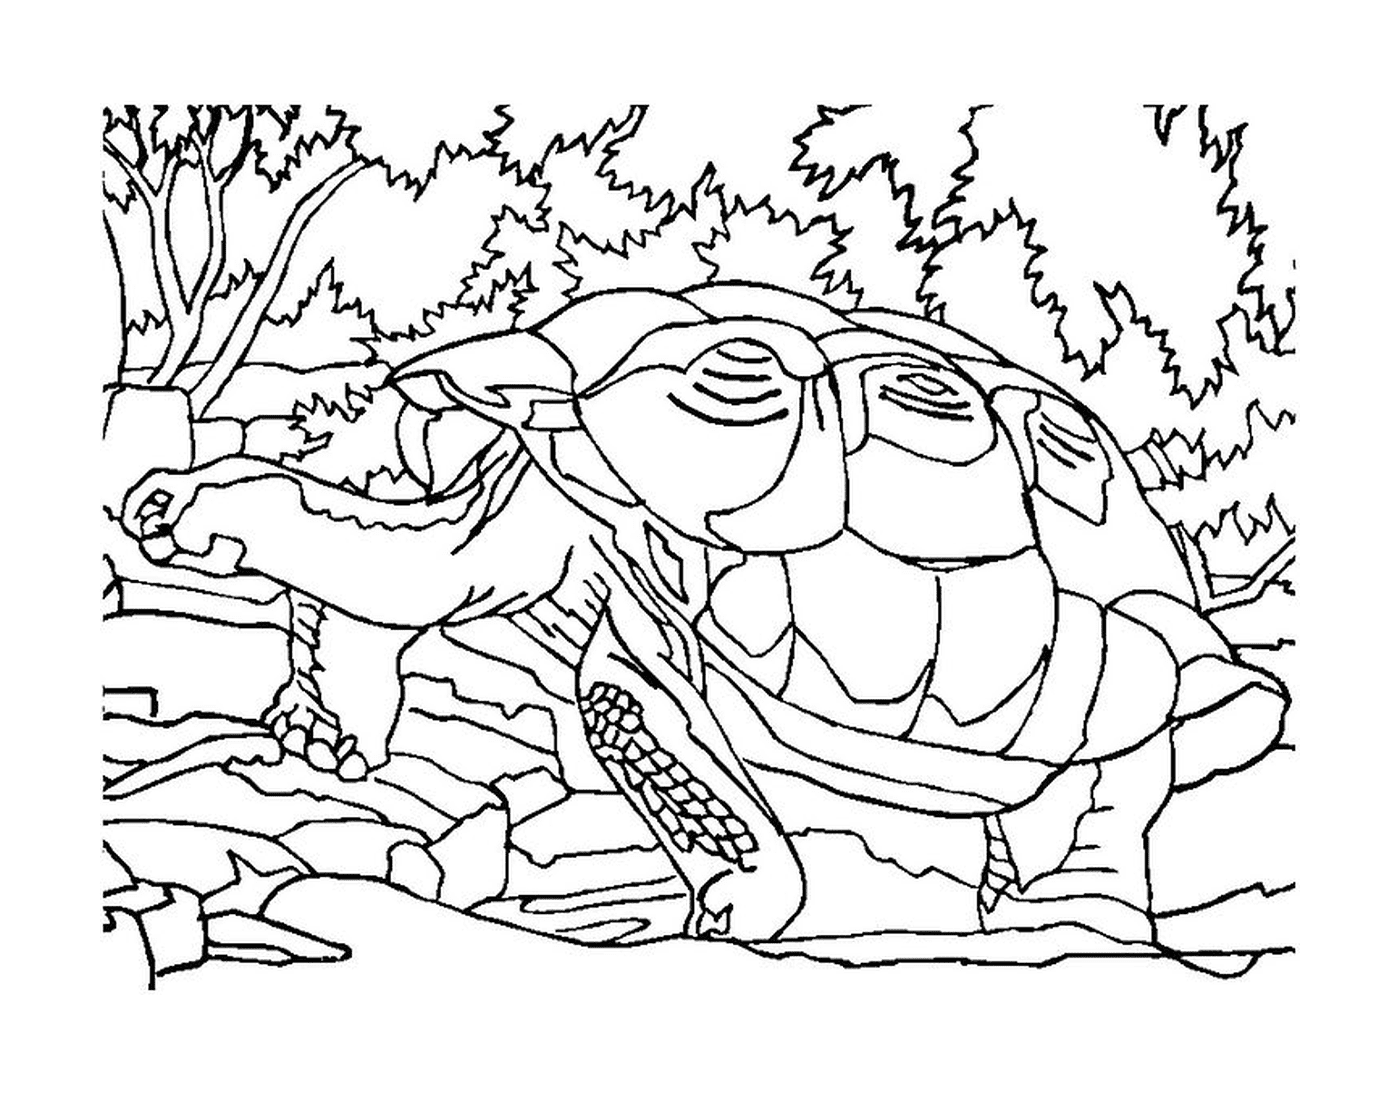  Schildkröte im Wald 